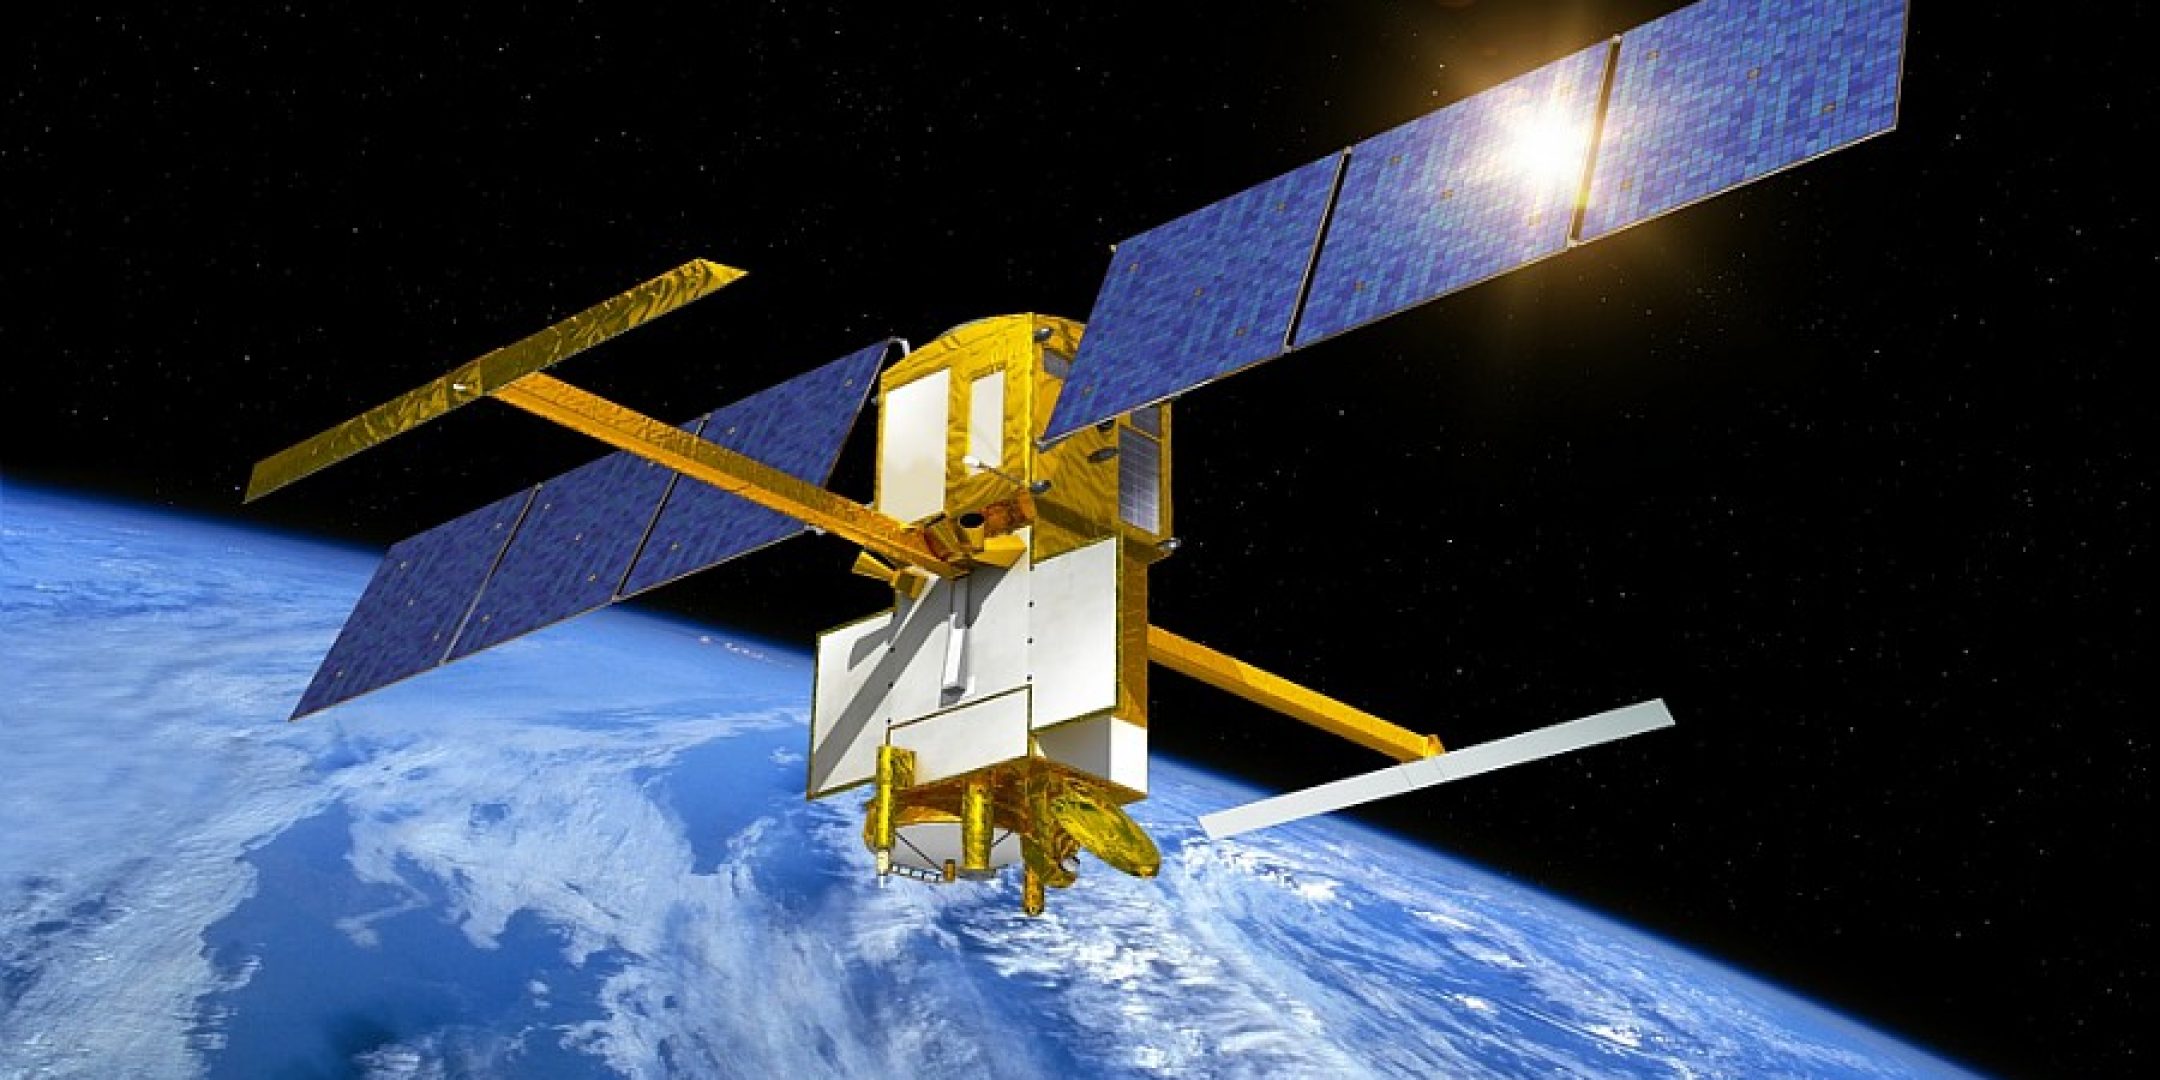 Le satellite SWOT sera doté d'un altimètre capable de surveiller les fleuves et lacs de notre planète.